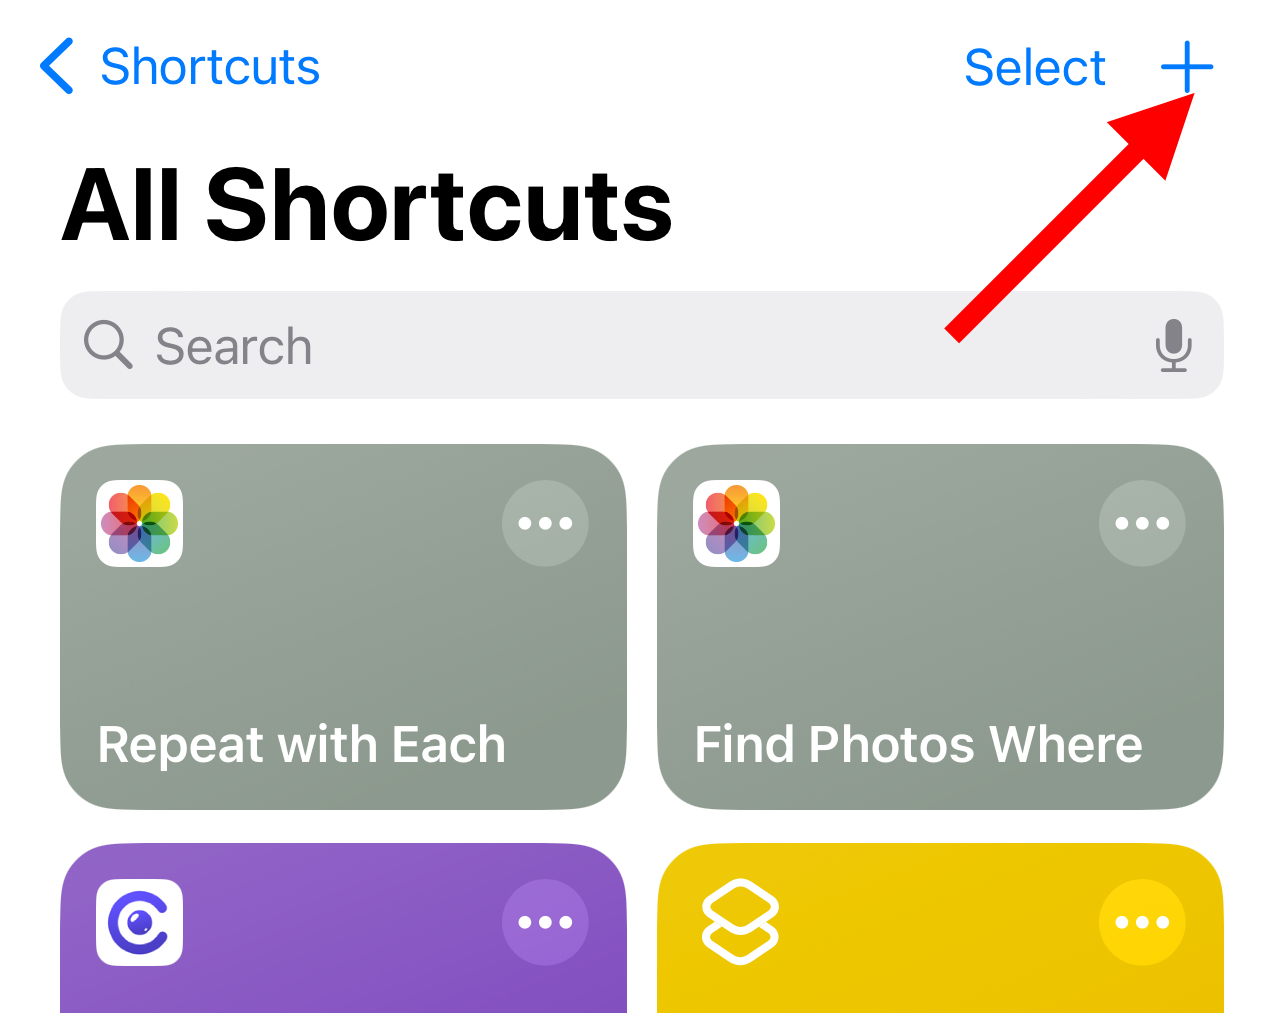 add shortcut